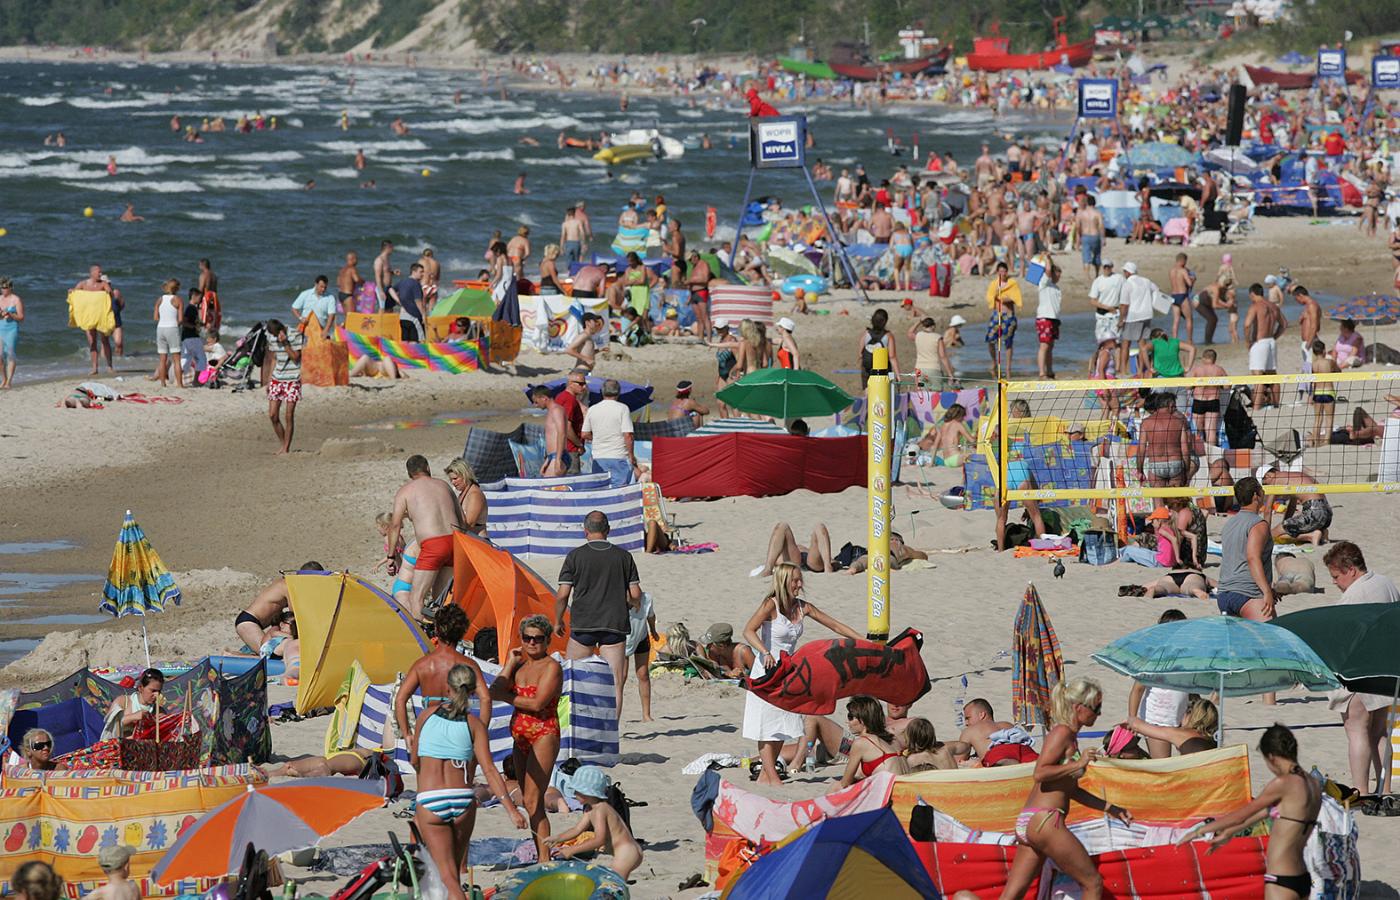 Bałtyckie plaże przypominają śródziemnomorskie. Upalne słońce, woda ciepła jak nigdy wcześniej.